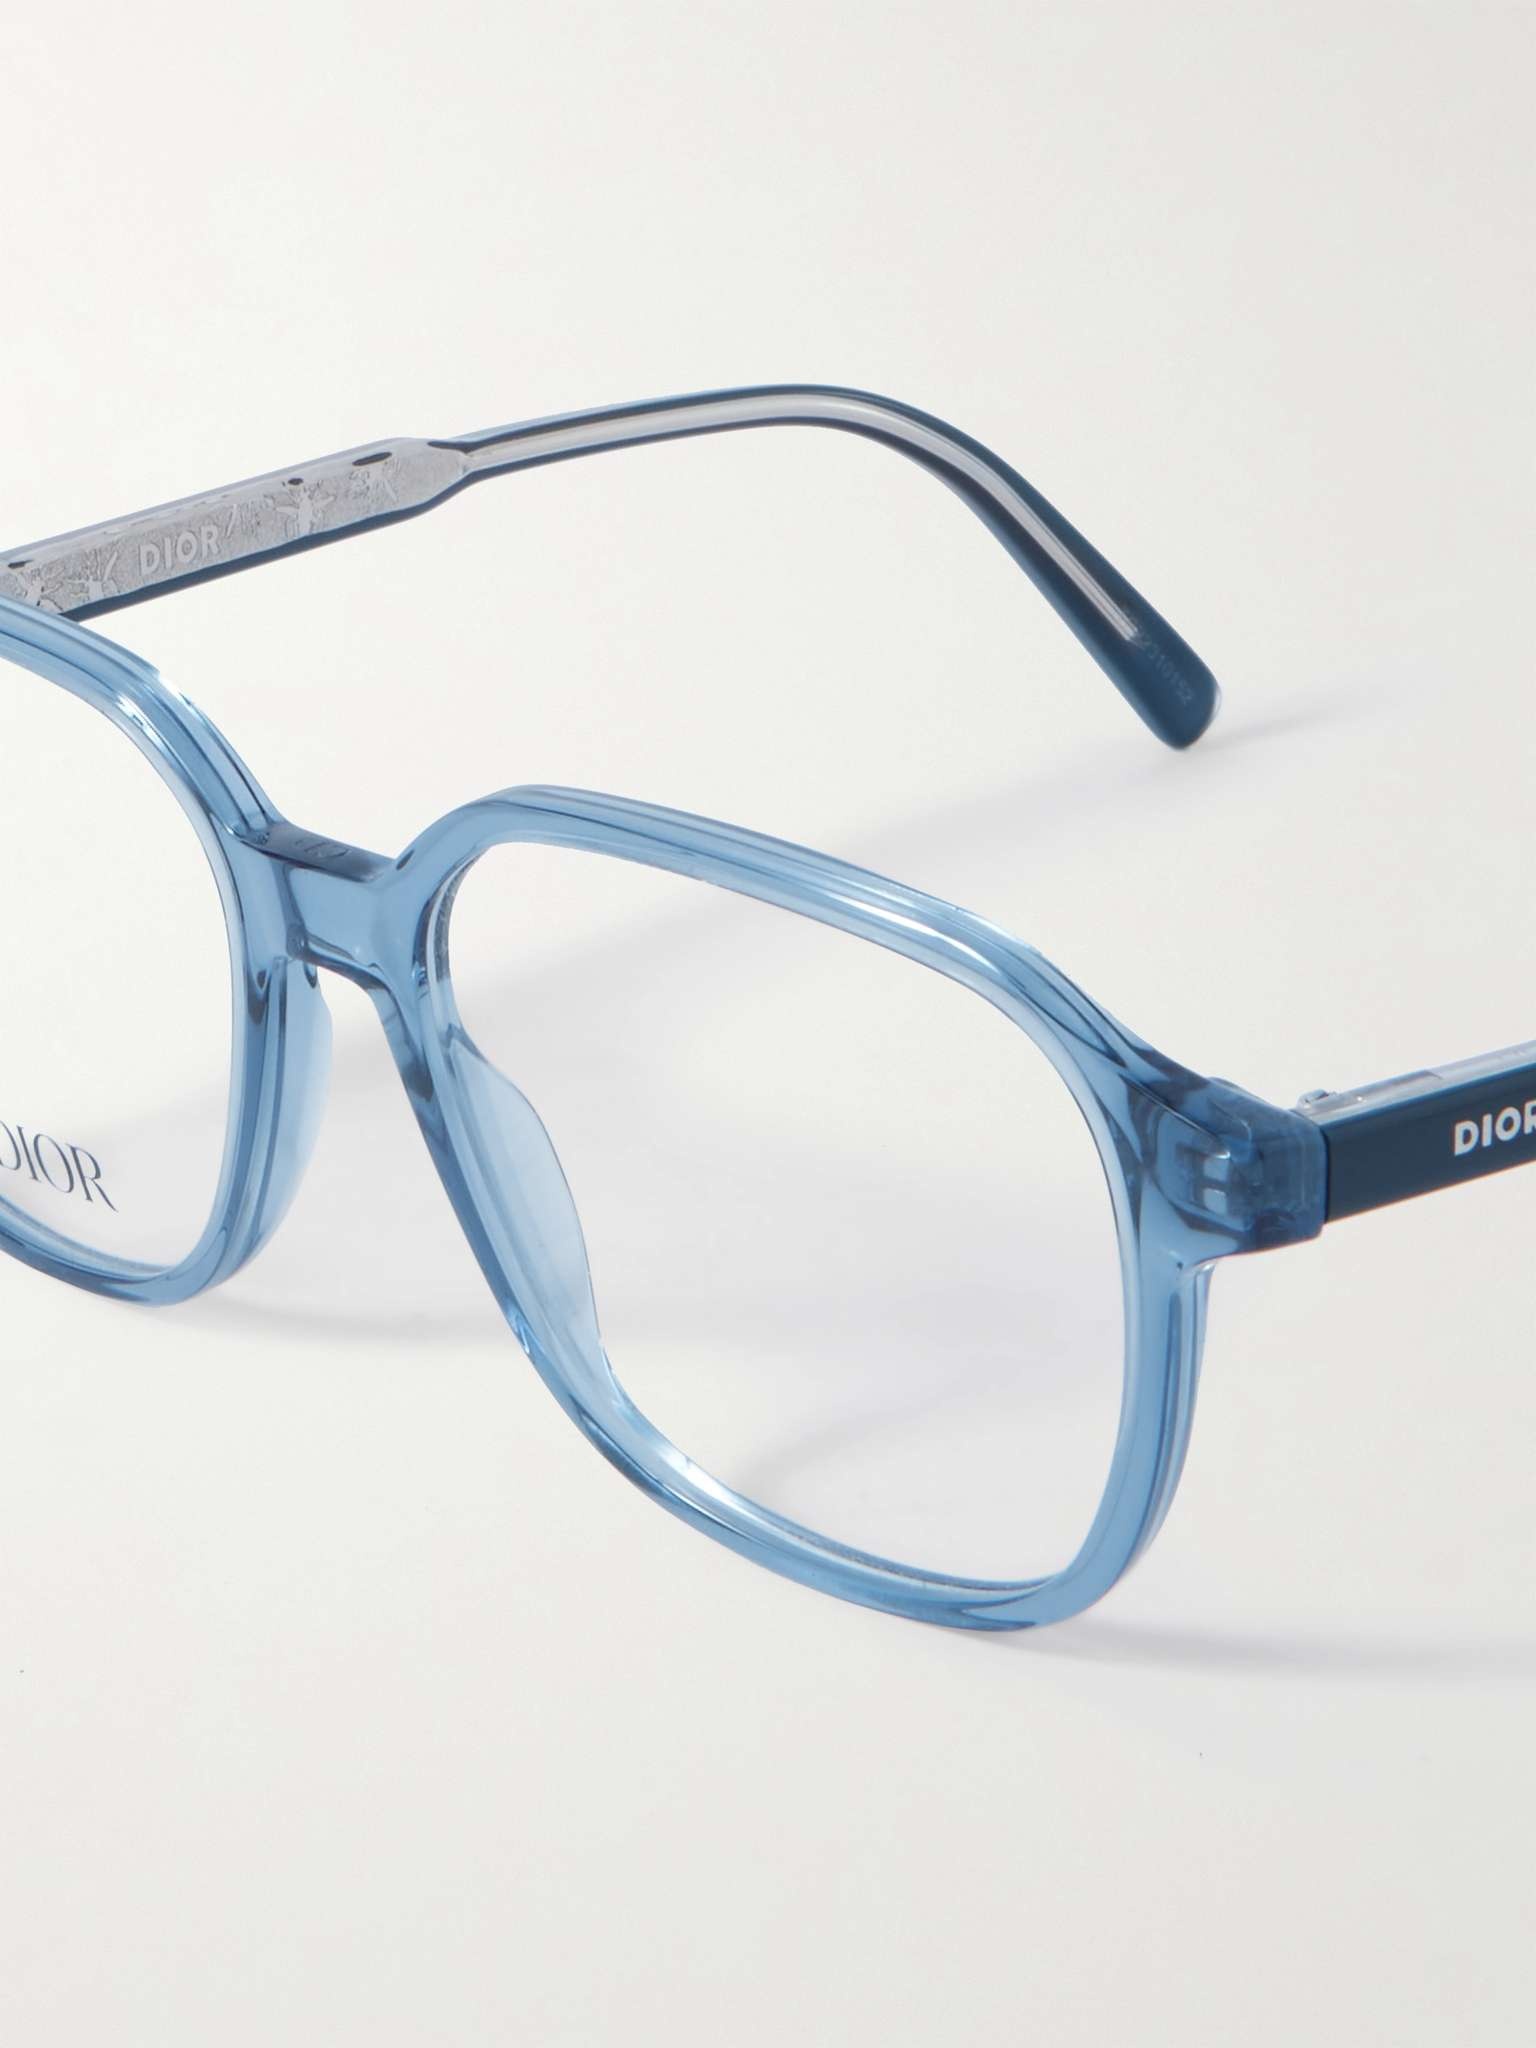 InDiorO S3I Square-Frame Tortoiseshell Acetate Optical Glasses - 4